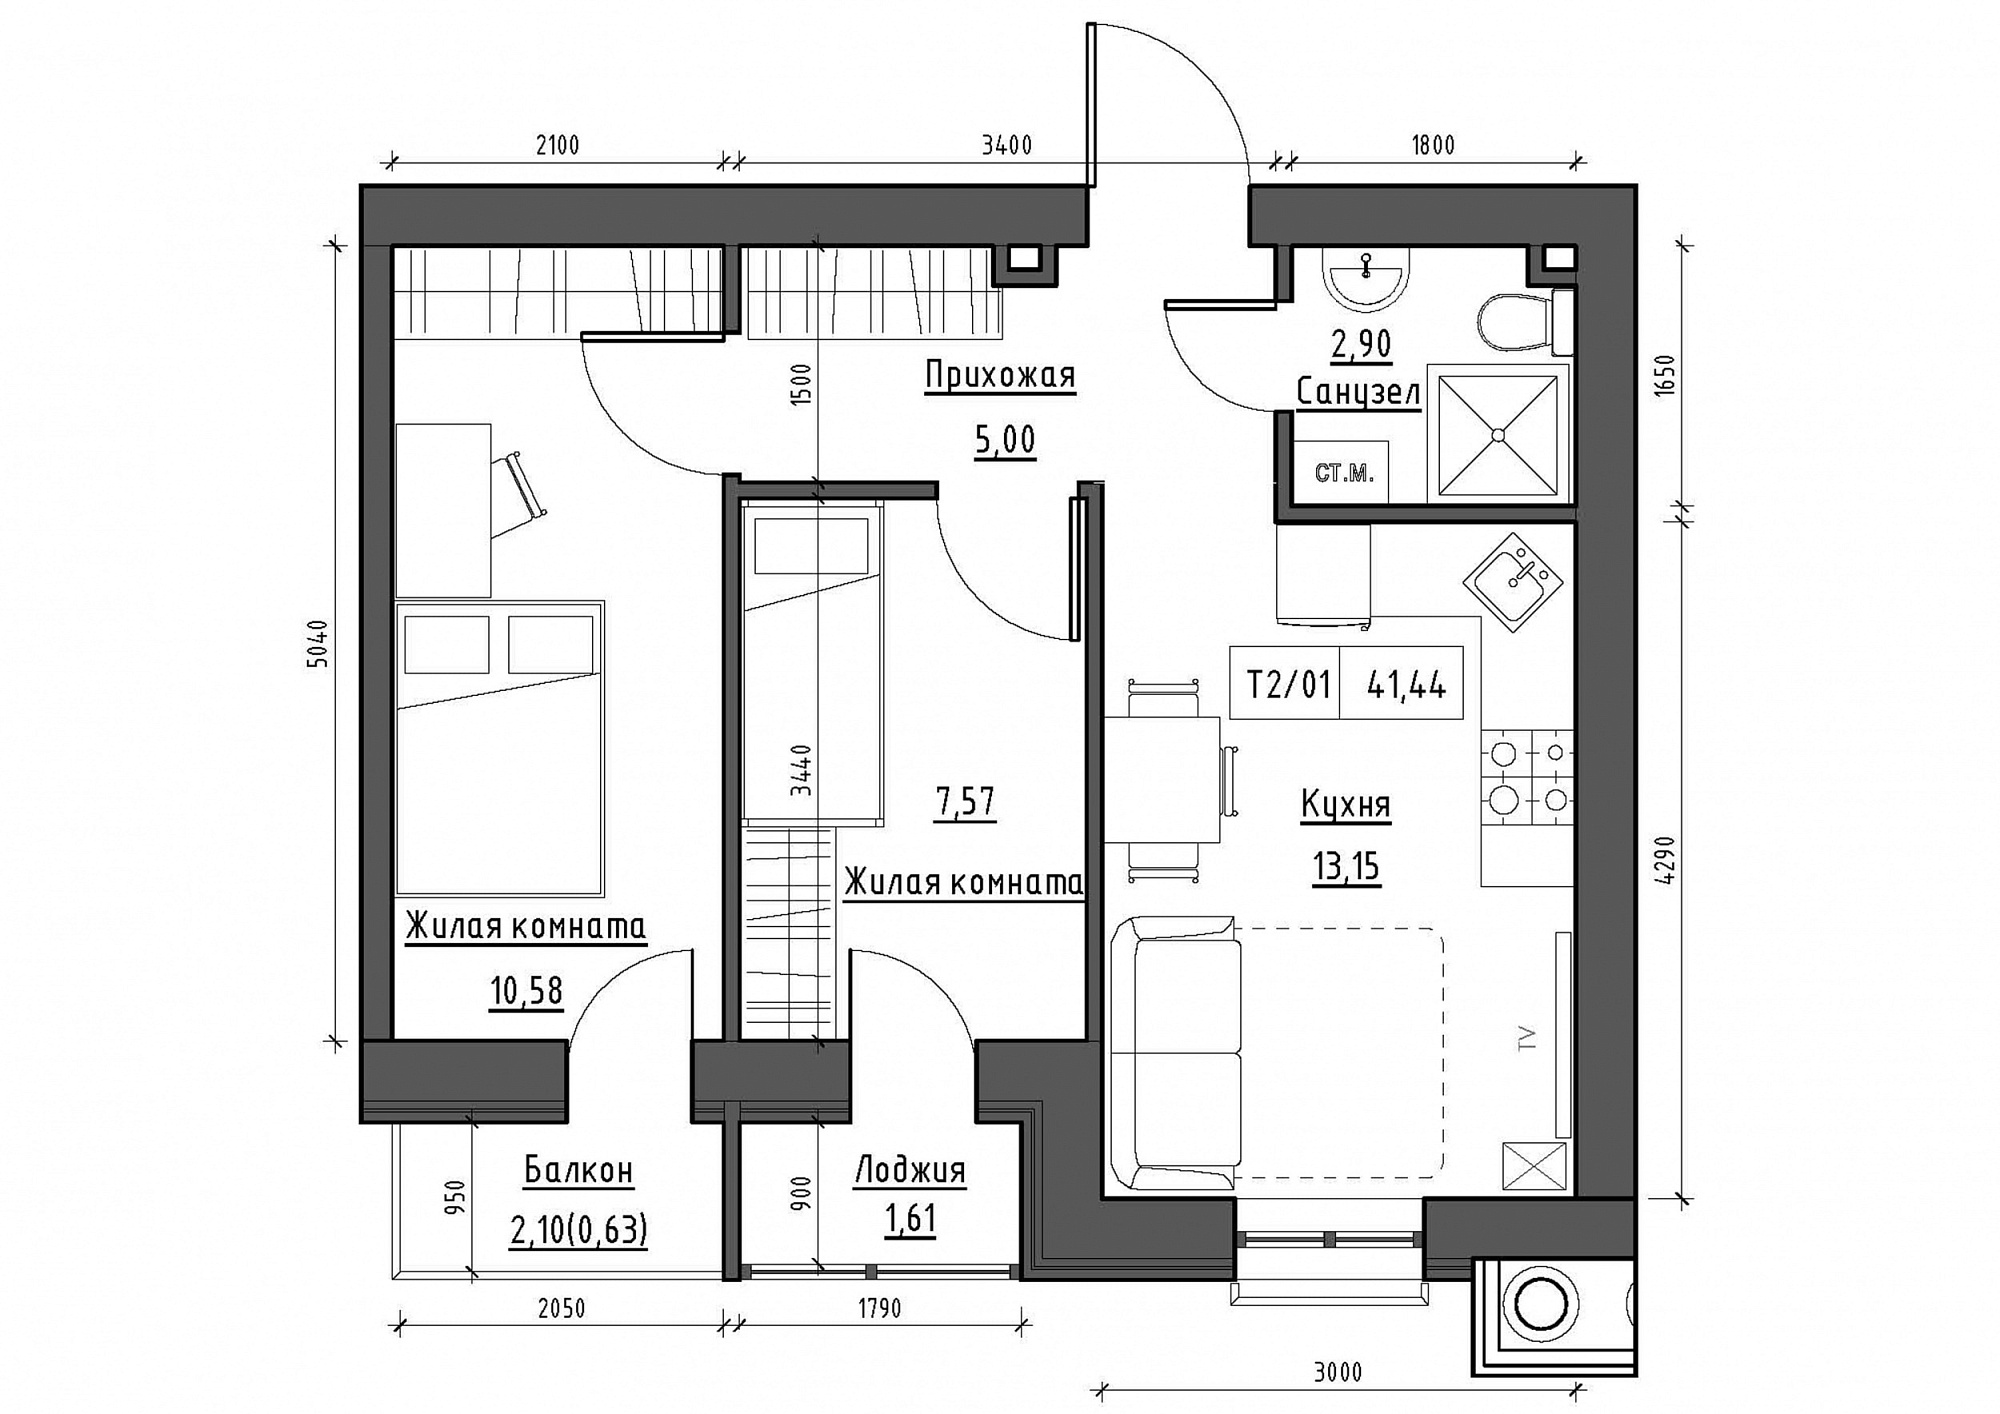 Планировка 2-к квартира площей 41.44м2, KS-011-04/0011.